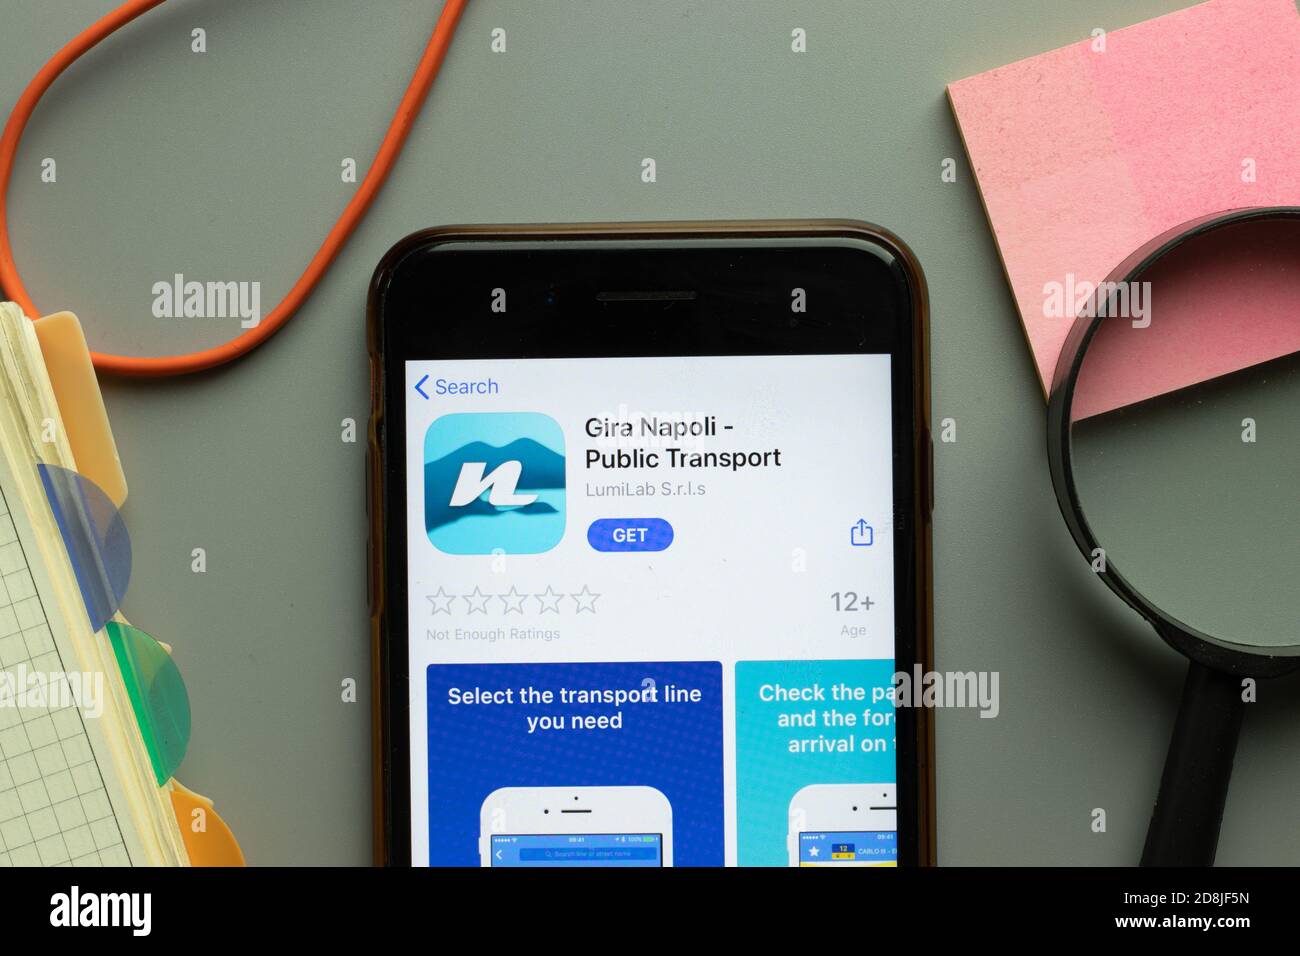 Nueva York, EE.UU. - 26 de octubre de 2020: Gira Napoli Public Transport mobile app logo en pantalla teléfono de cerca, editorial ilustrativa Foto de stock